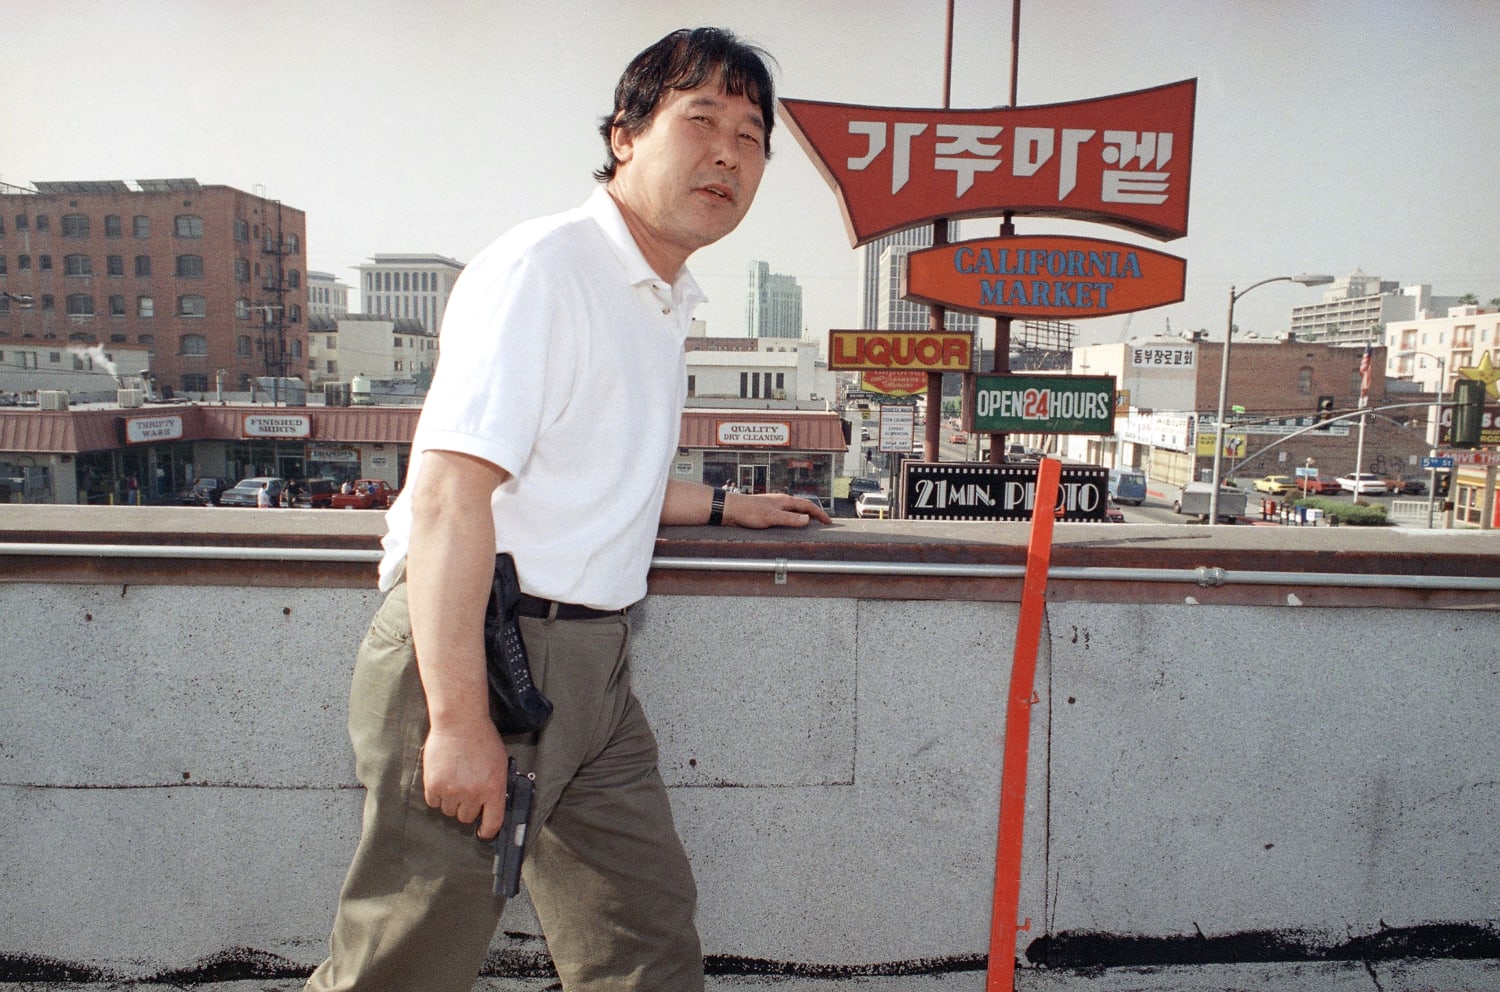 Korean public photos